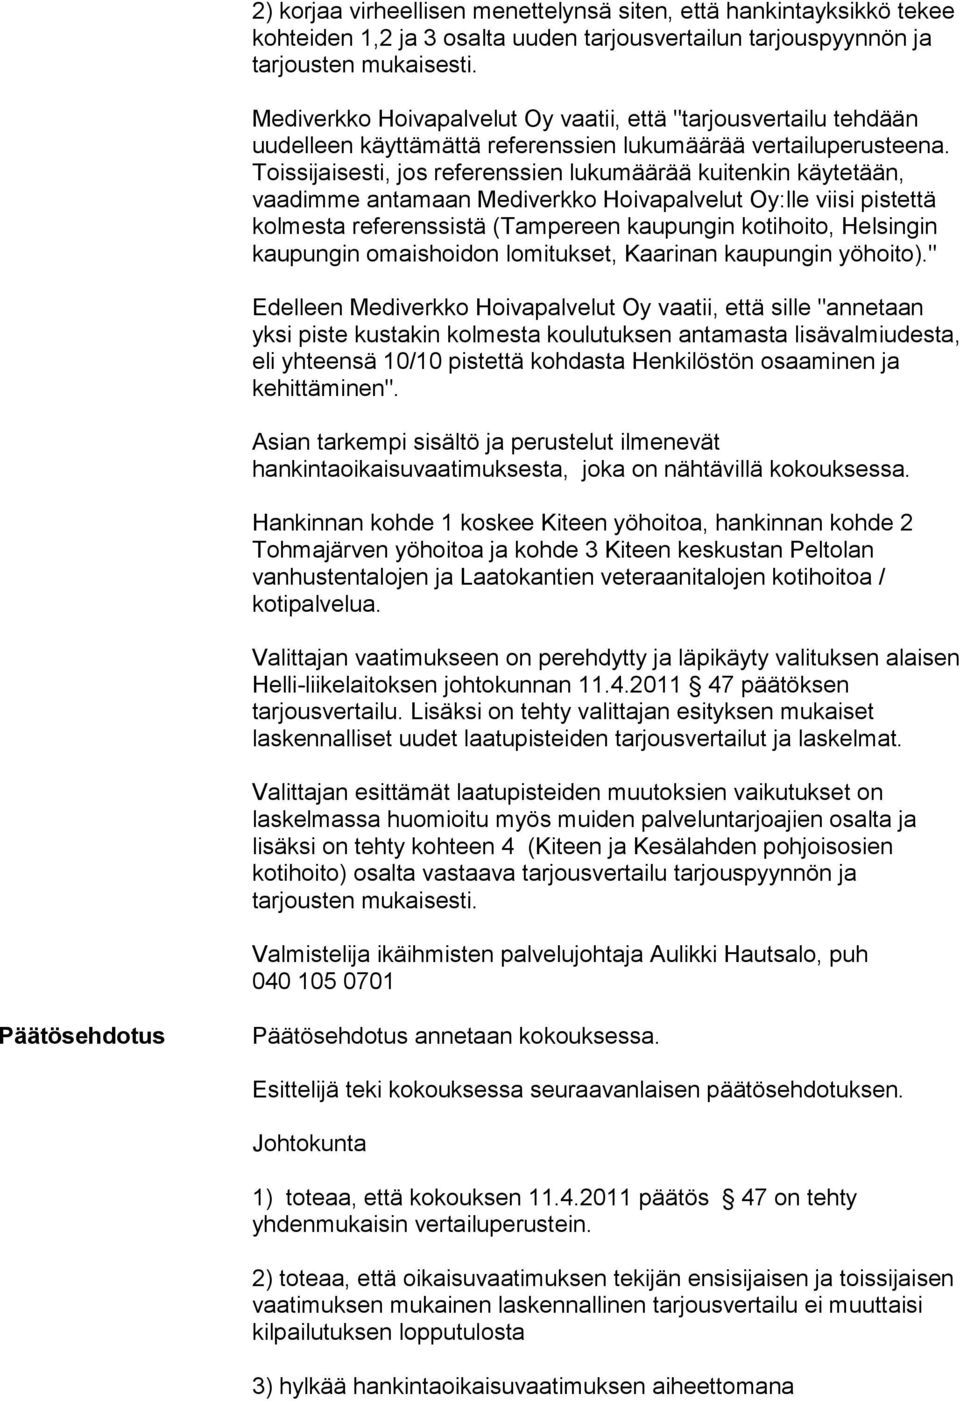 Toissijaisesti, jos referenssien lukumäärää kuitenkin käytetään, vaadimme antamaan Mediverkko Hoivapalvelut Oy:lle viisi pistettä kolmesta referenssistä (Tampereen kaupungin kotihoito, Helsingin